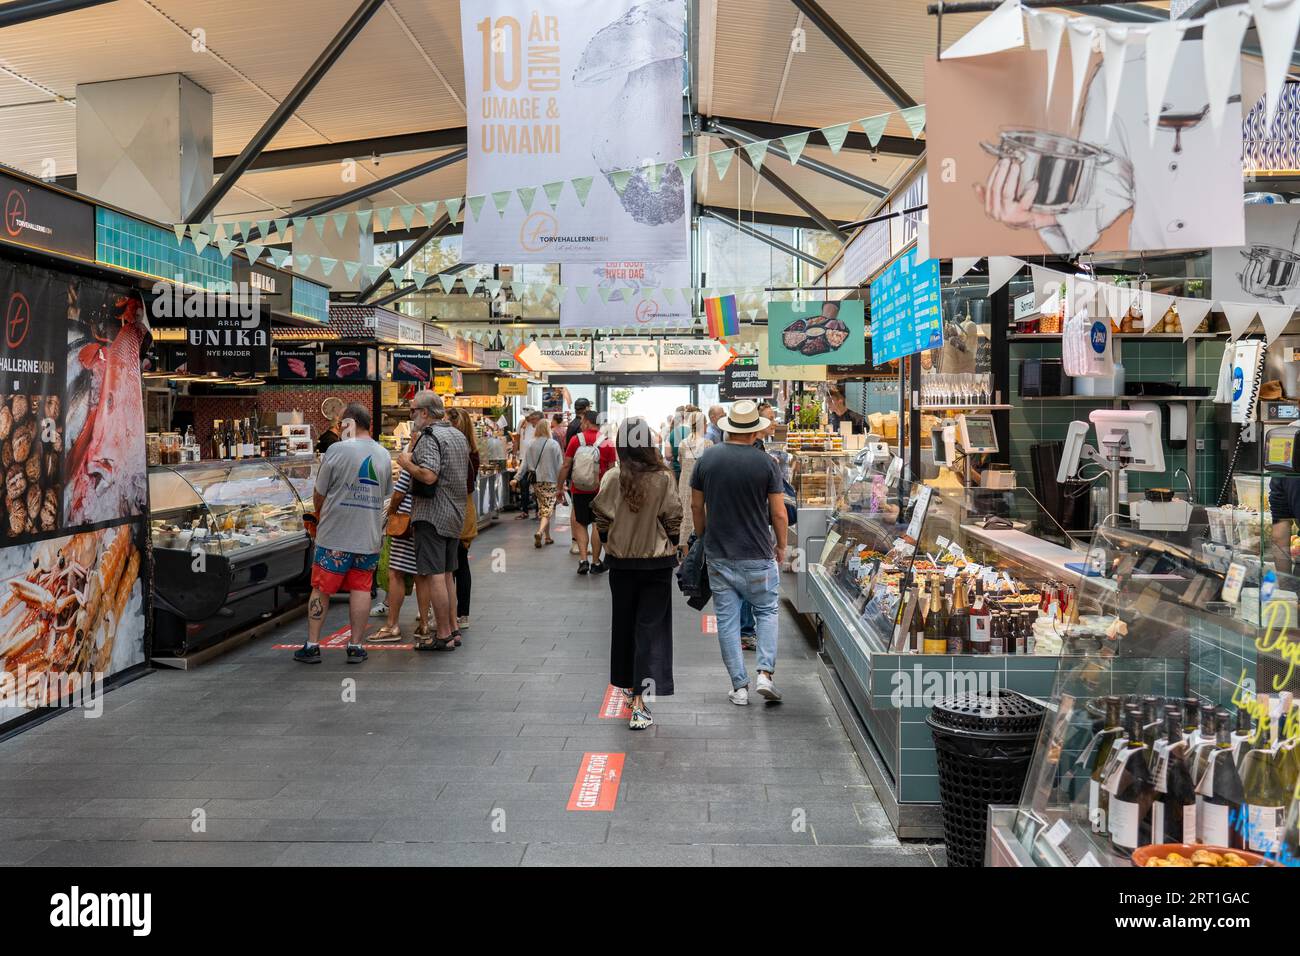 Copenhagen, Denmark, September 03, 2021: People inside Torvehallerne, a popular modern market place Stock Photo